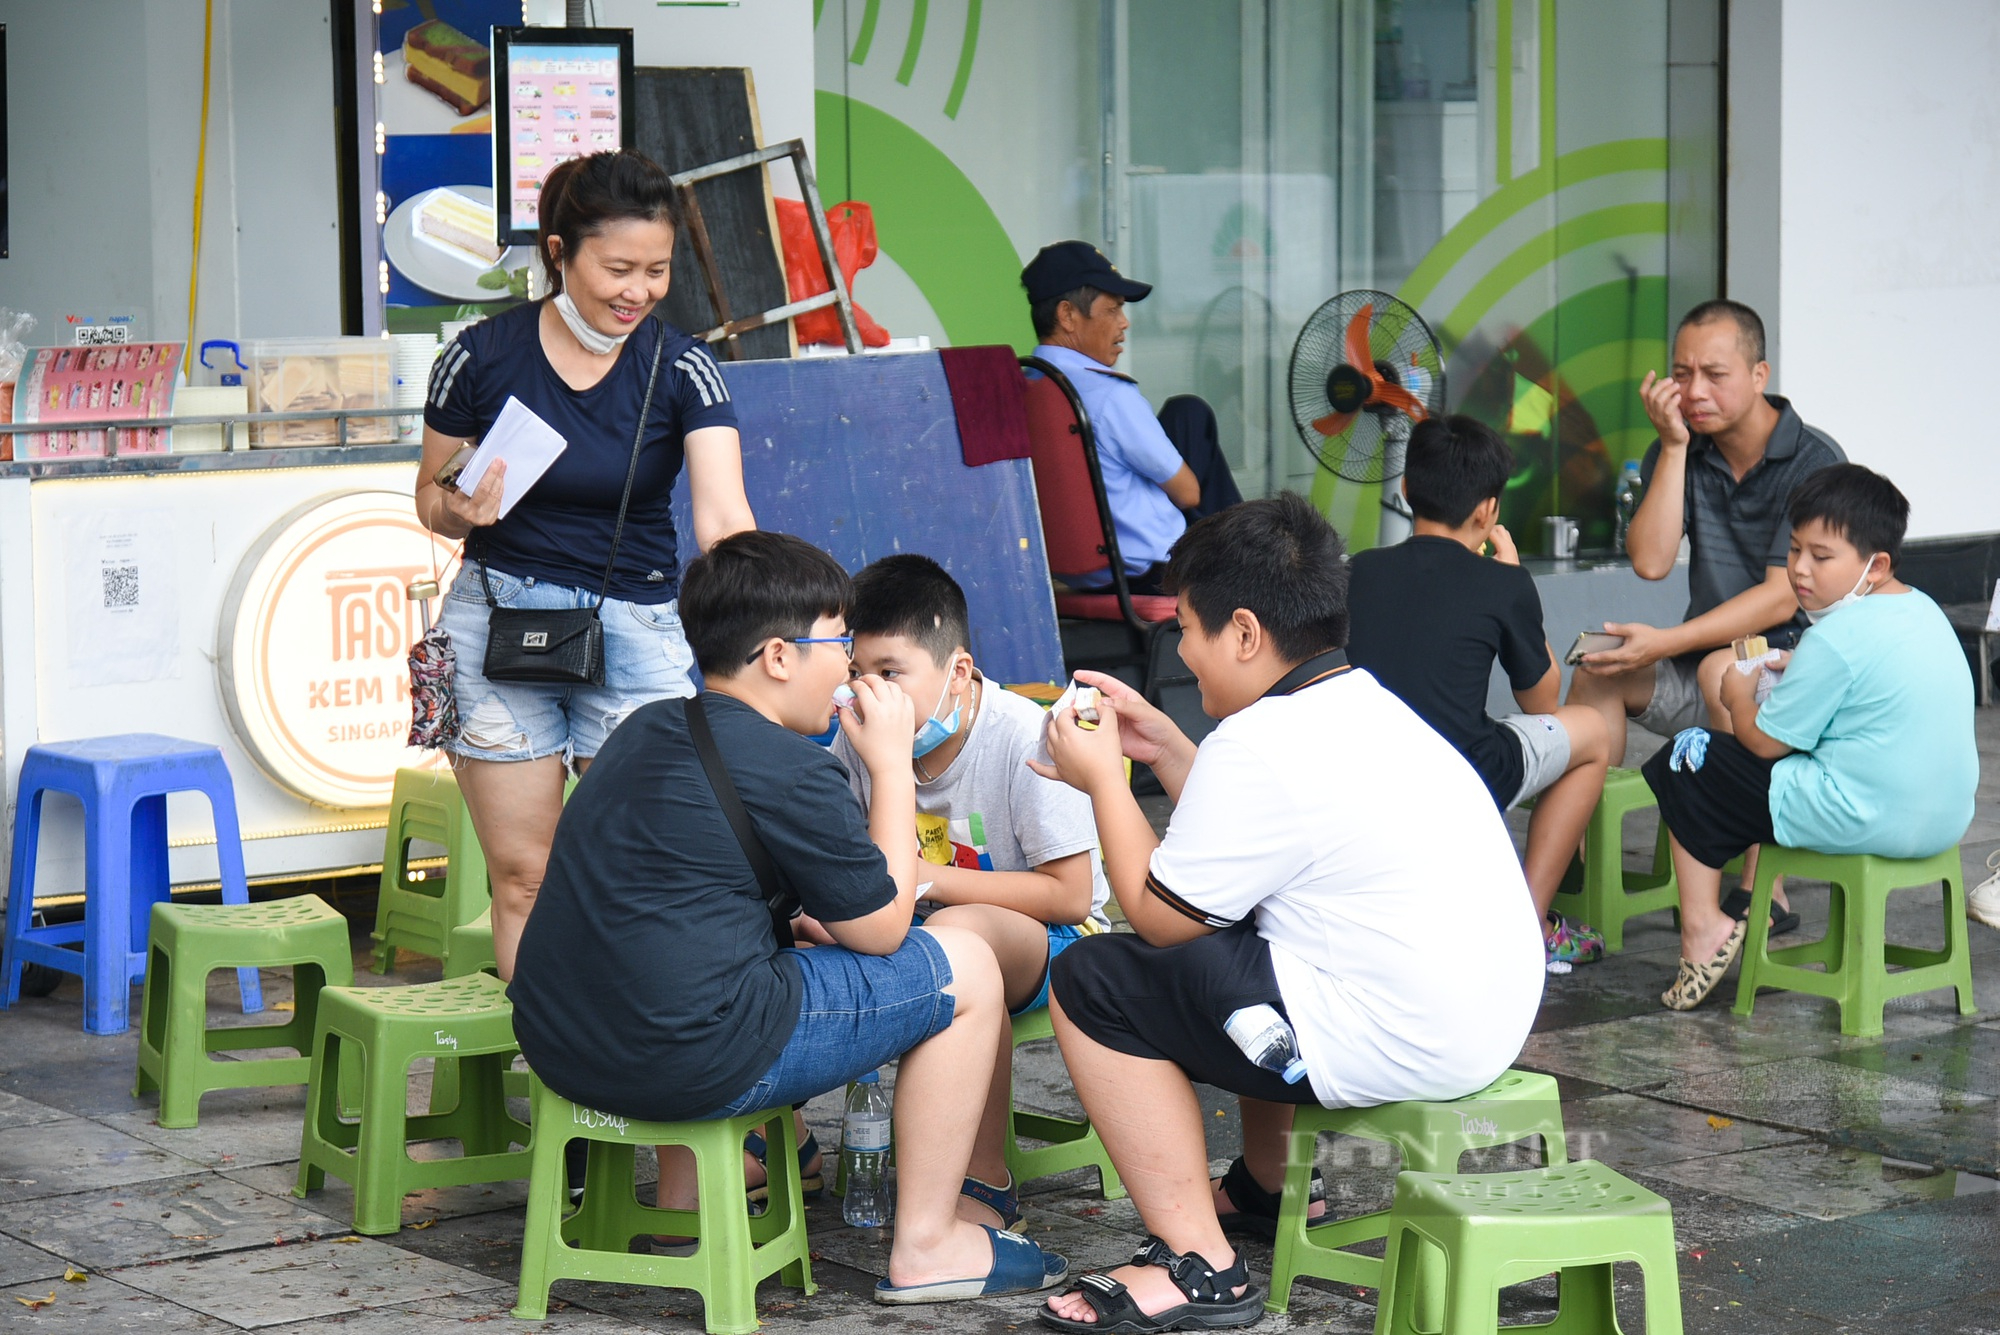 Kem kẹp Singapore lạ miệng thu hút giới trẻ Hà Nội - Ảnh 10.